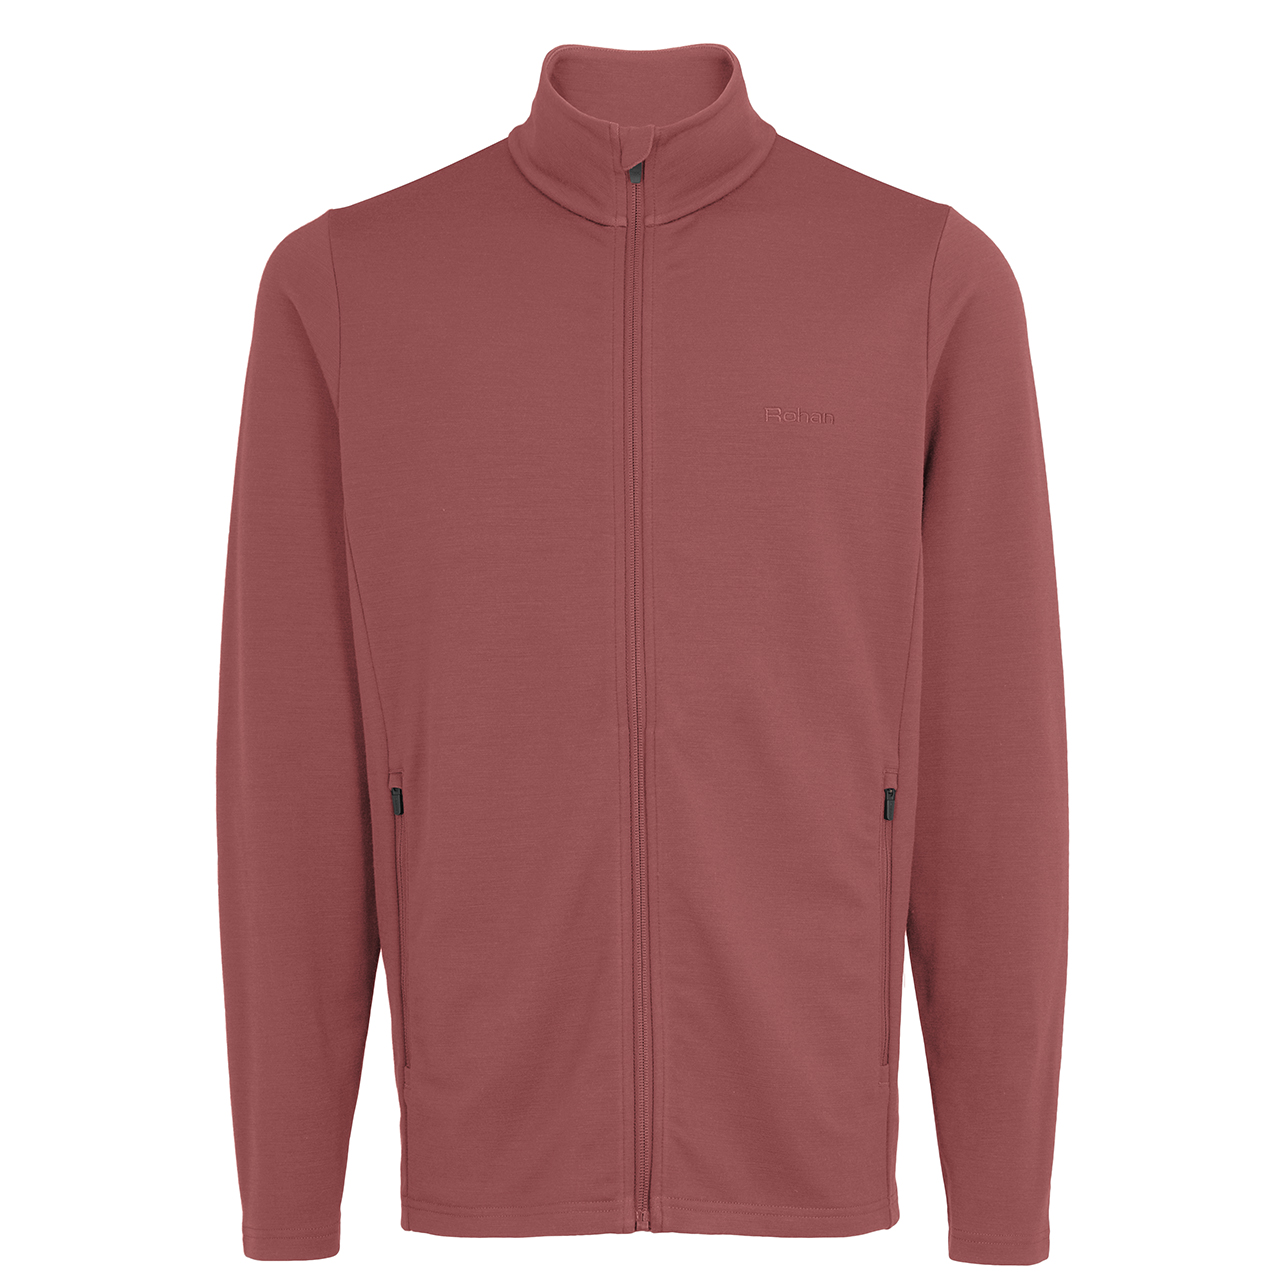 Men’s Radiant Merino Zip Fleece Jacket